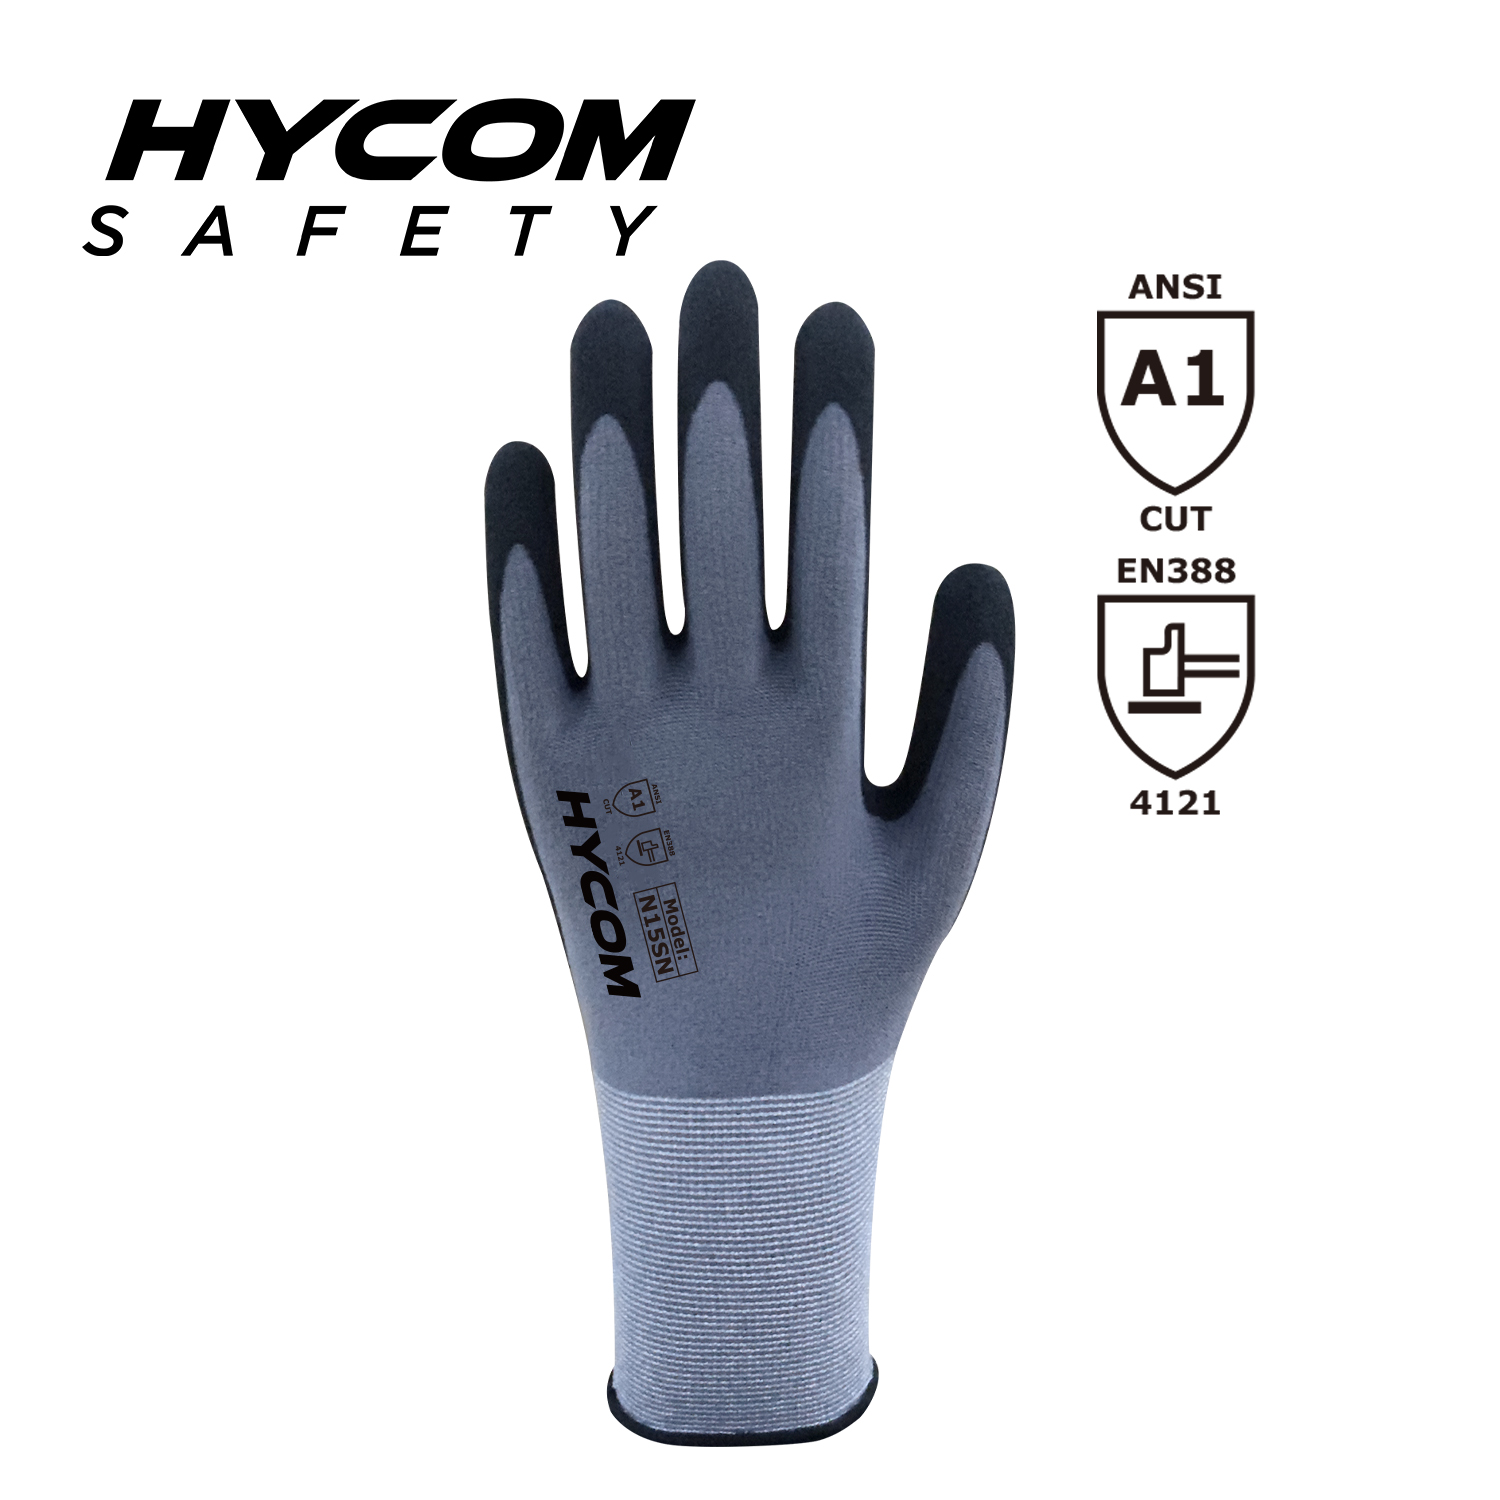 HYCOM 15G feiner Nylon-Spandex-Handschuh mit Sandy-Nitril-Beschichtung auf der Handfläche und Screen-Touch-Arbeitshandschuh